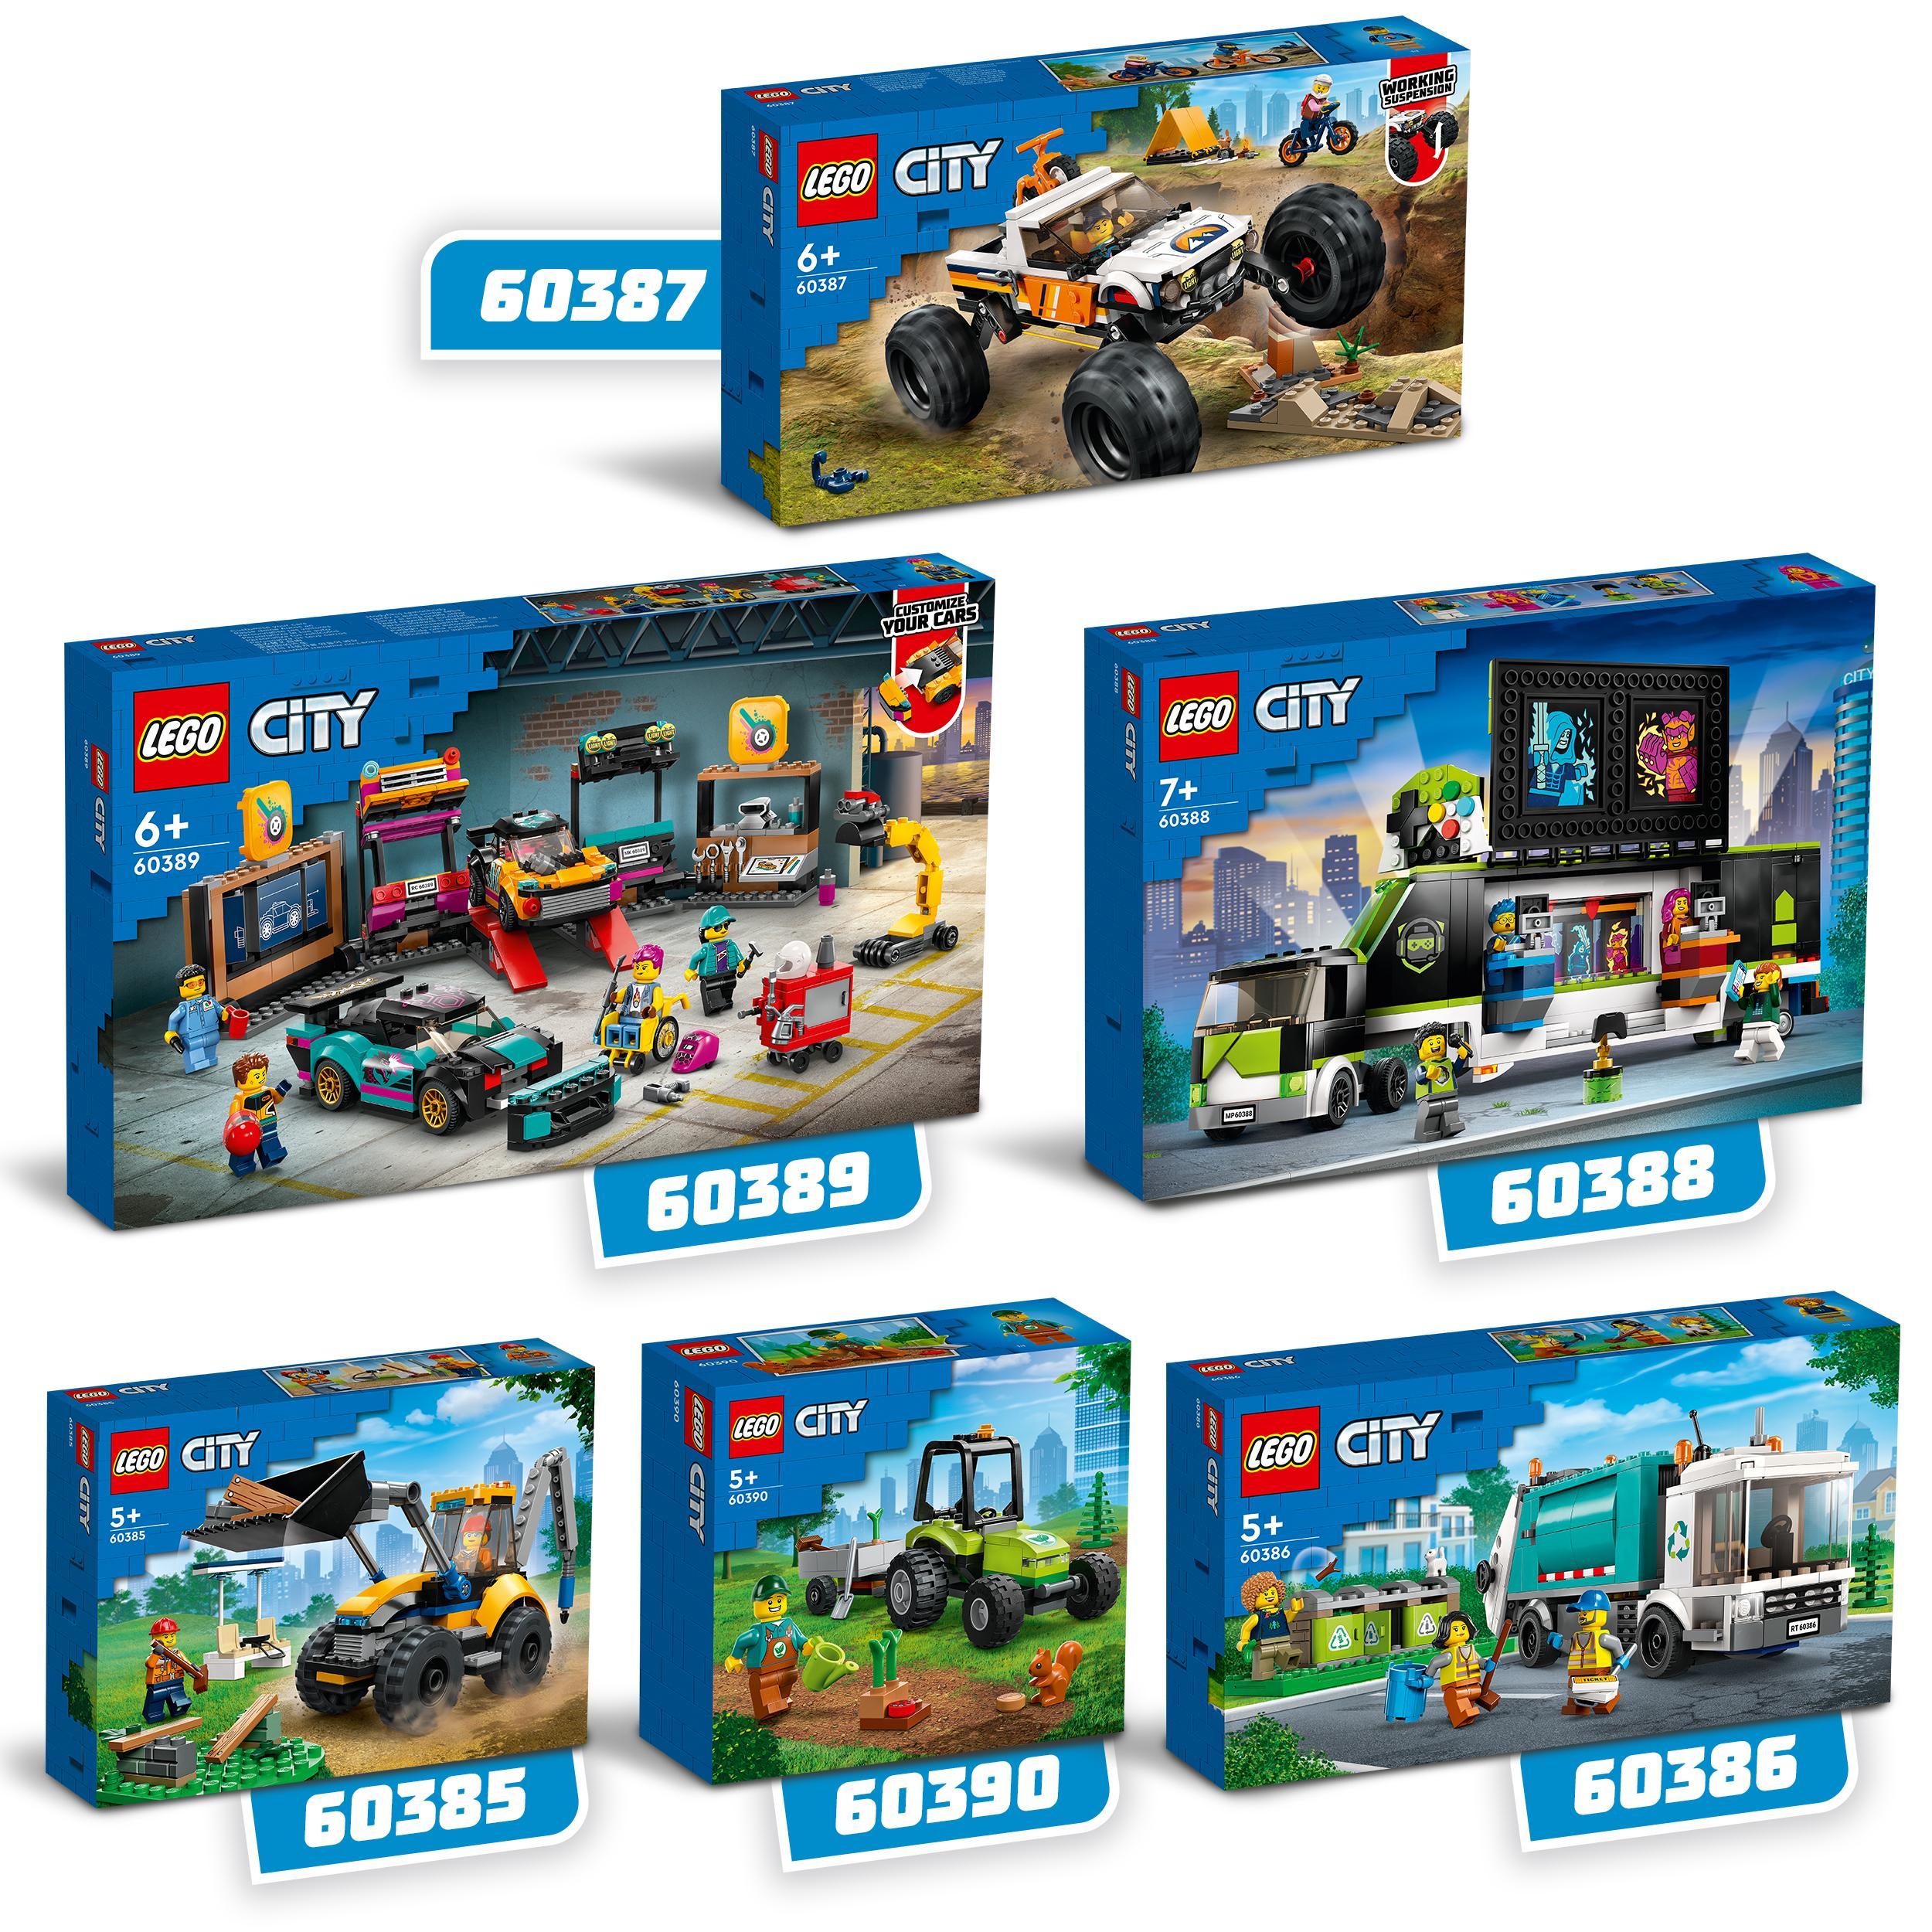 Lego city 60385 scavatrice per costruzioni, escavatore giocattolo con minifigure, giochi per bambini e bambine, idea regalo - LEGO CITY